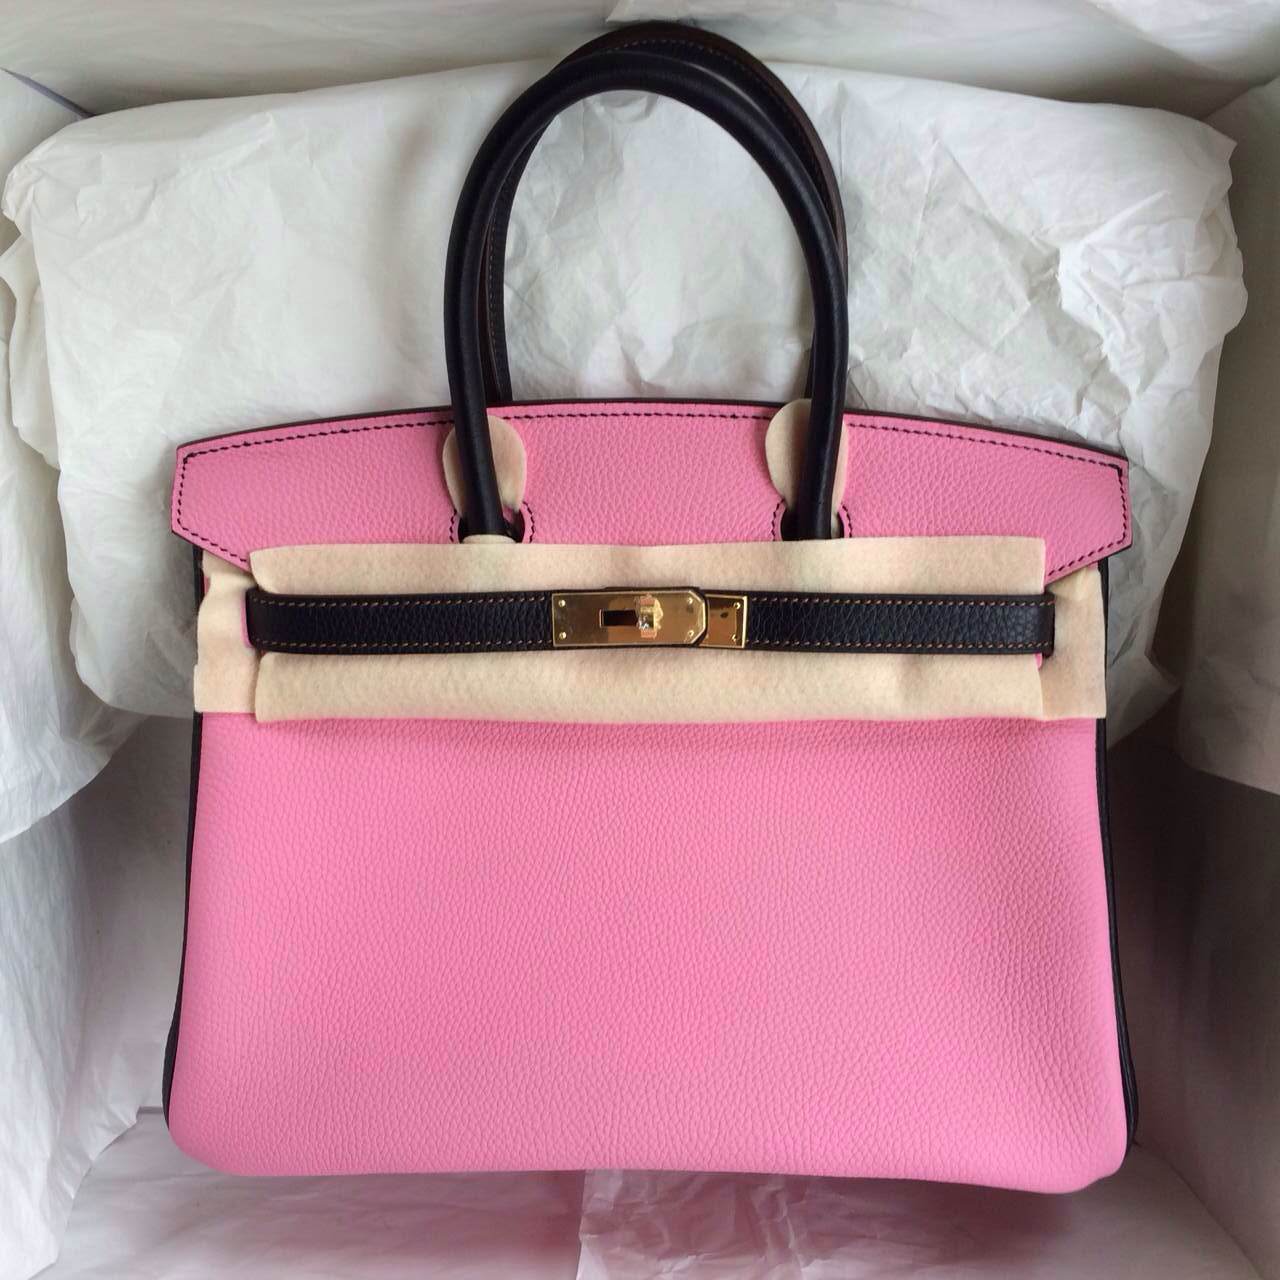 5P Pink/Black France Togo Leather Hermes Birkin Bag Gold Hardware - H ...